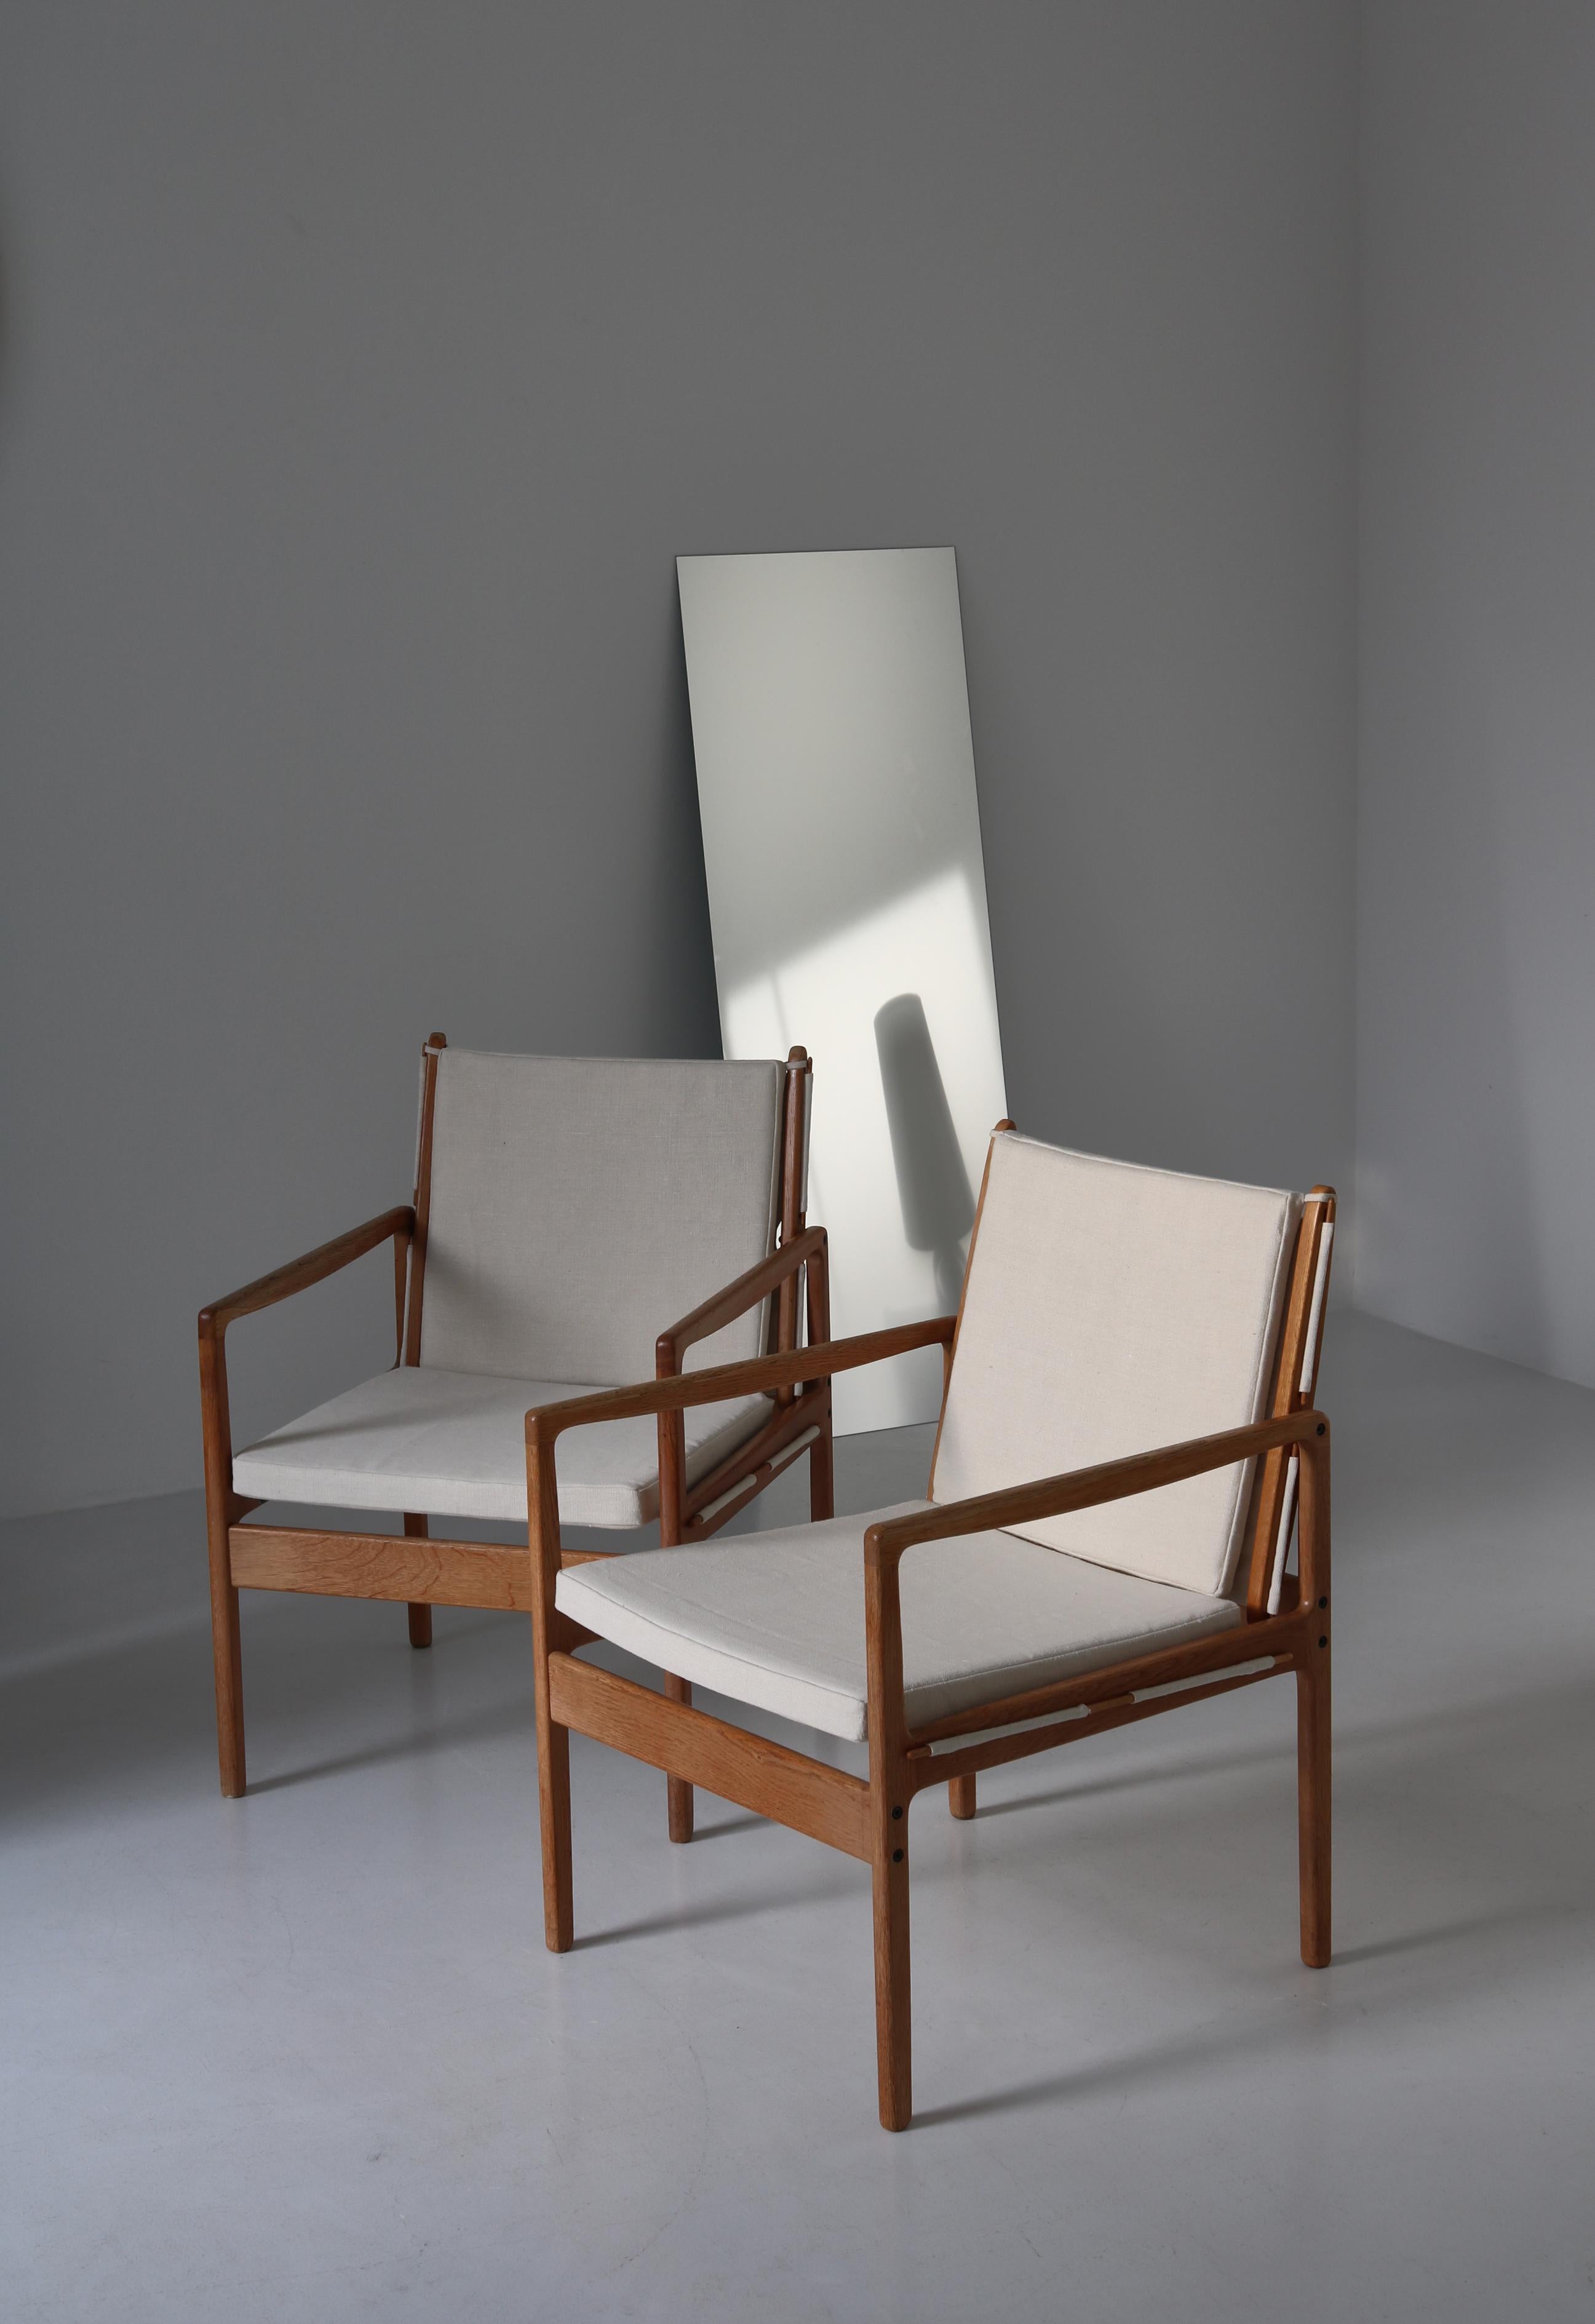 Ole Wanscher Safari Chairs in Oak & Light Canvas, Scandinavian Modern, 1960s For Sale 13